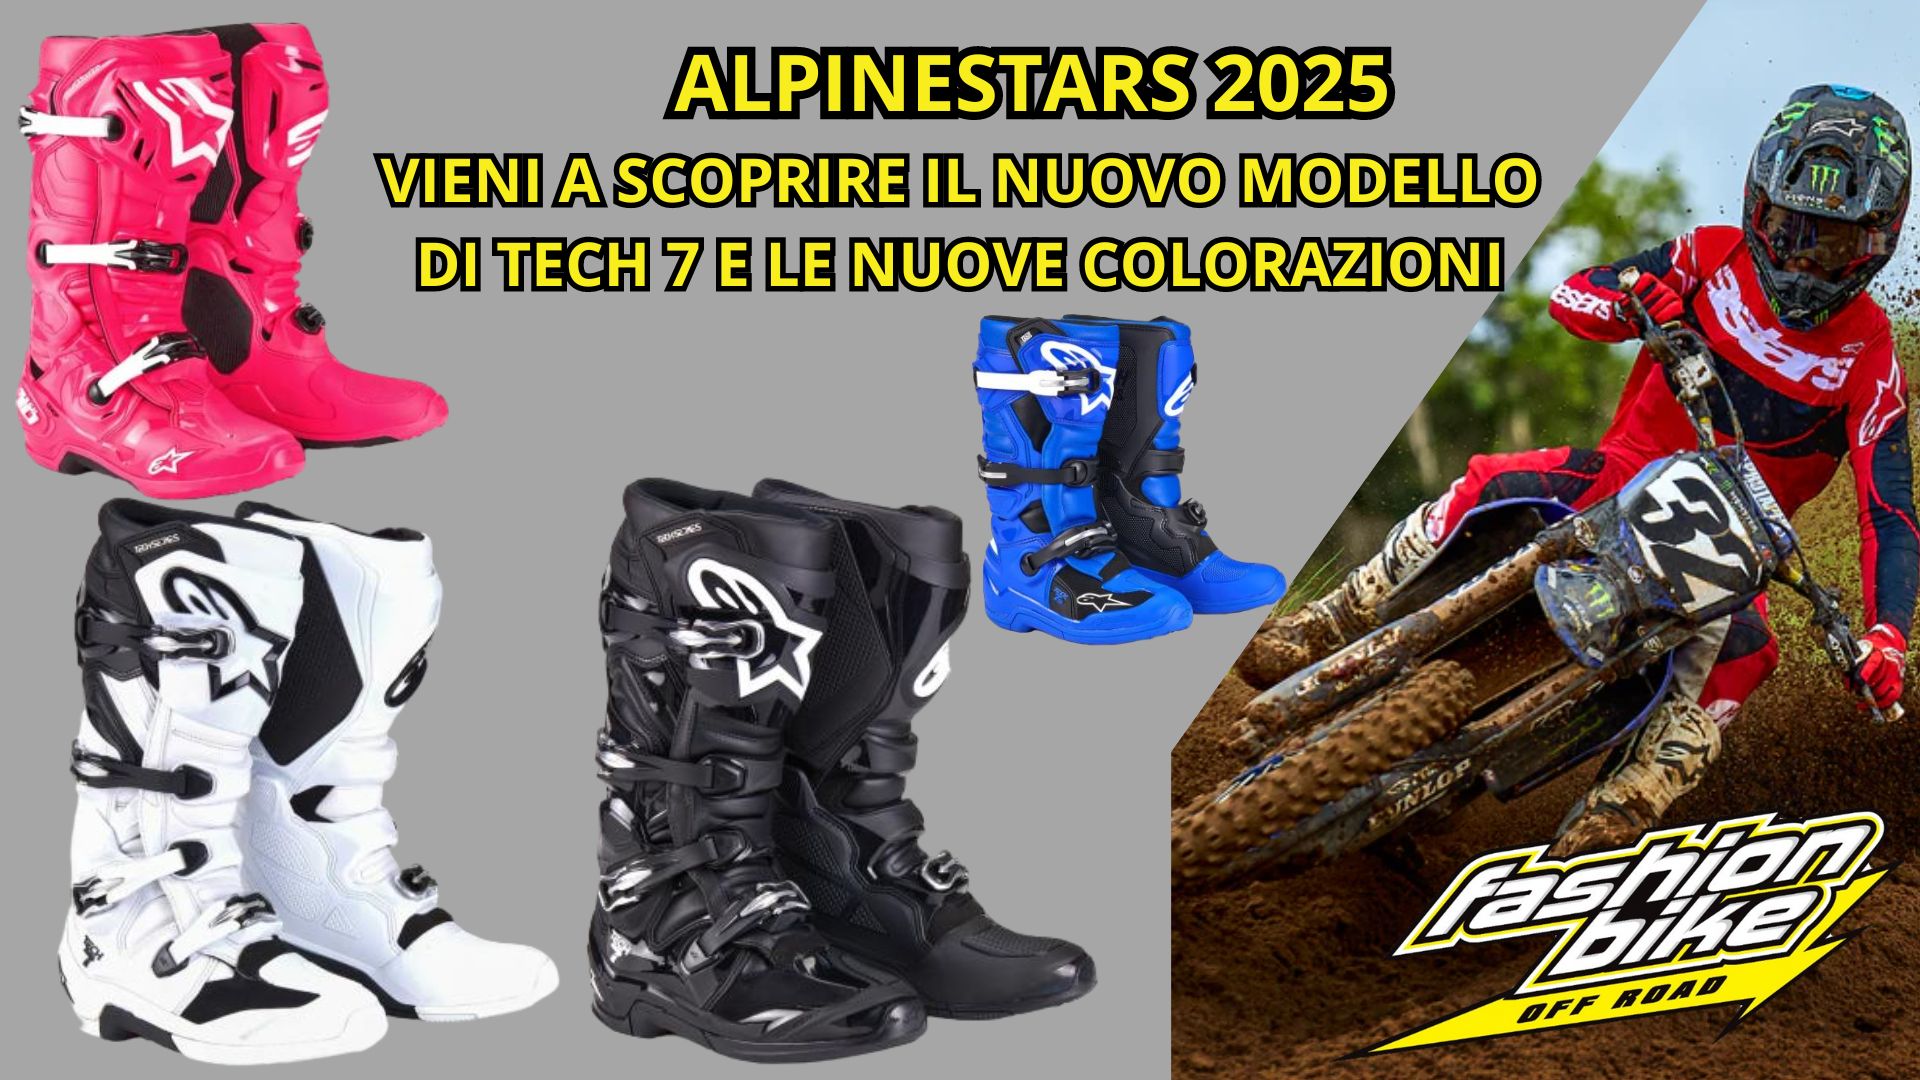 ALPINESTARS 2025